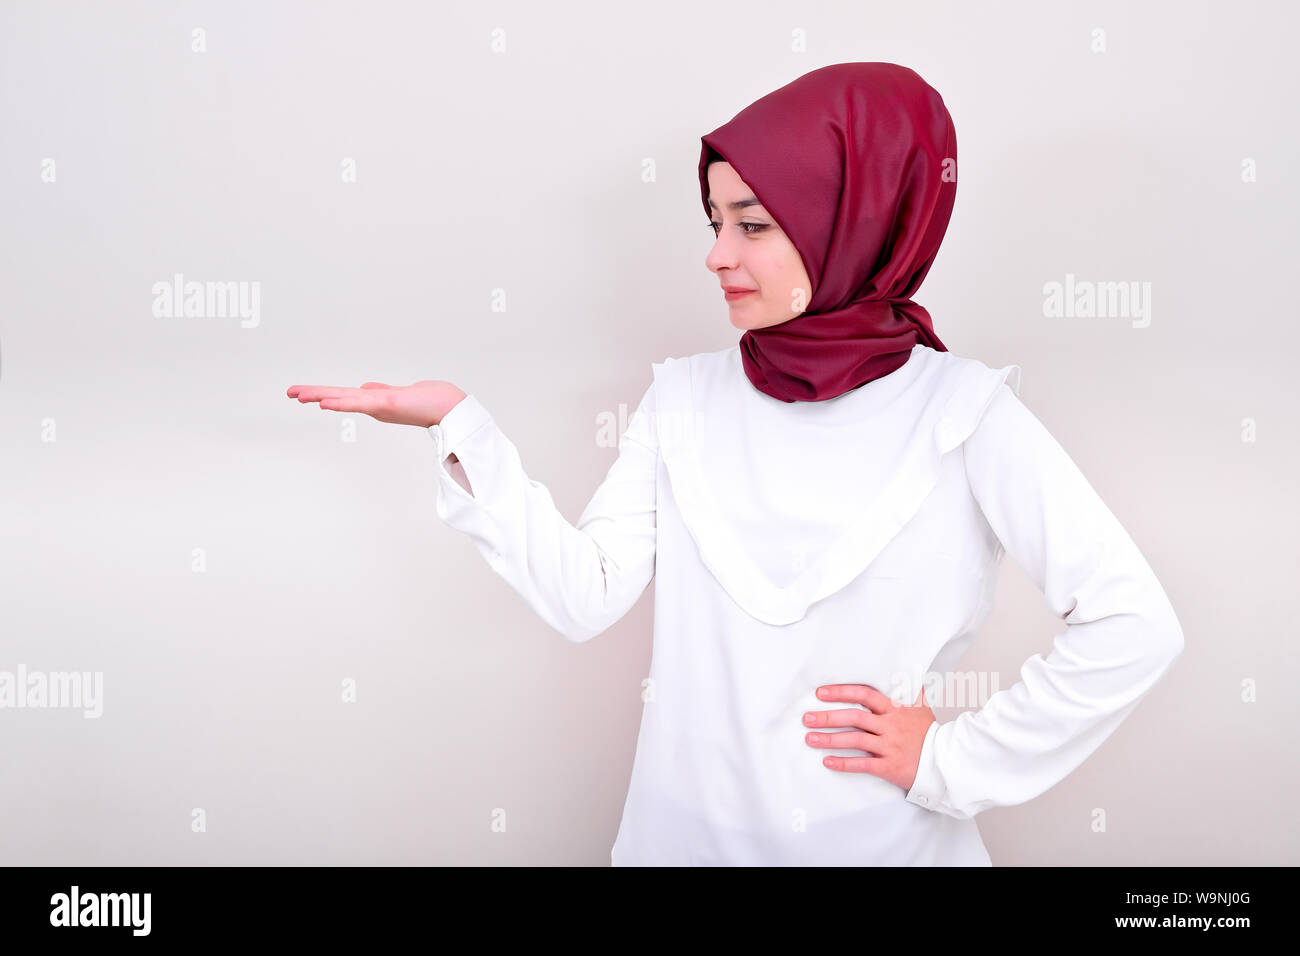 Donna musulmana tenendo la copia in bianco spazio alla sua mano aperta palm, hijab girl cercando la sua mano, lo sfondo è bianco isolato Foto Stock